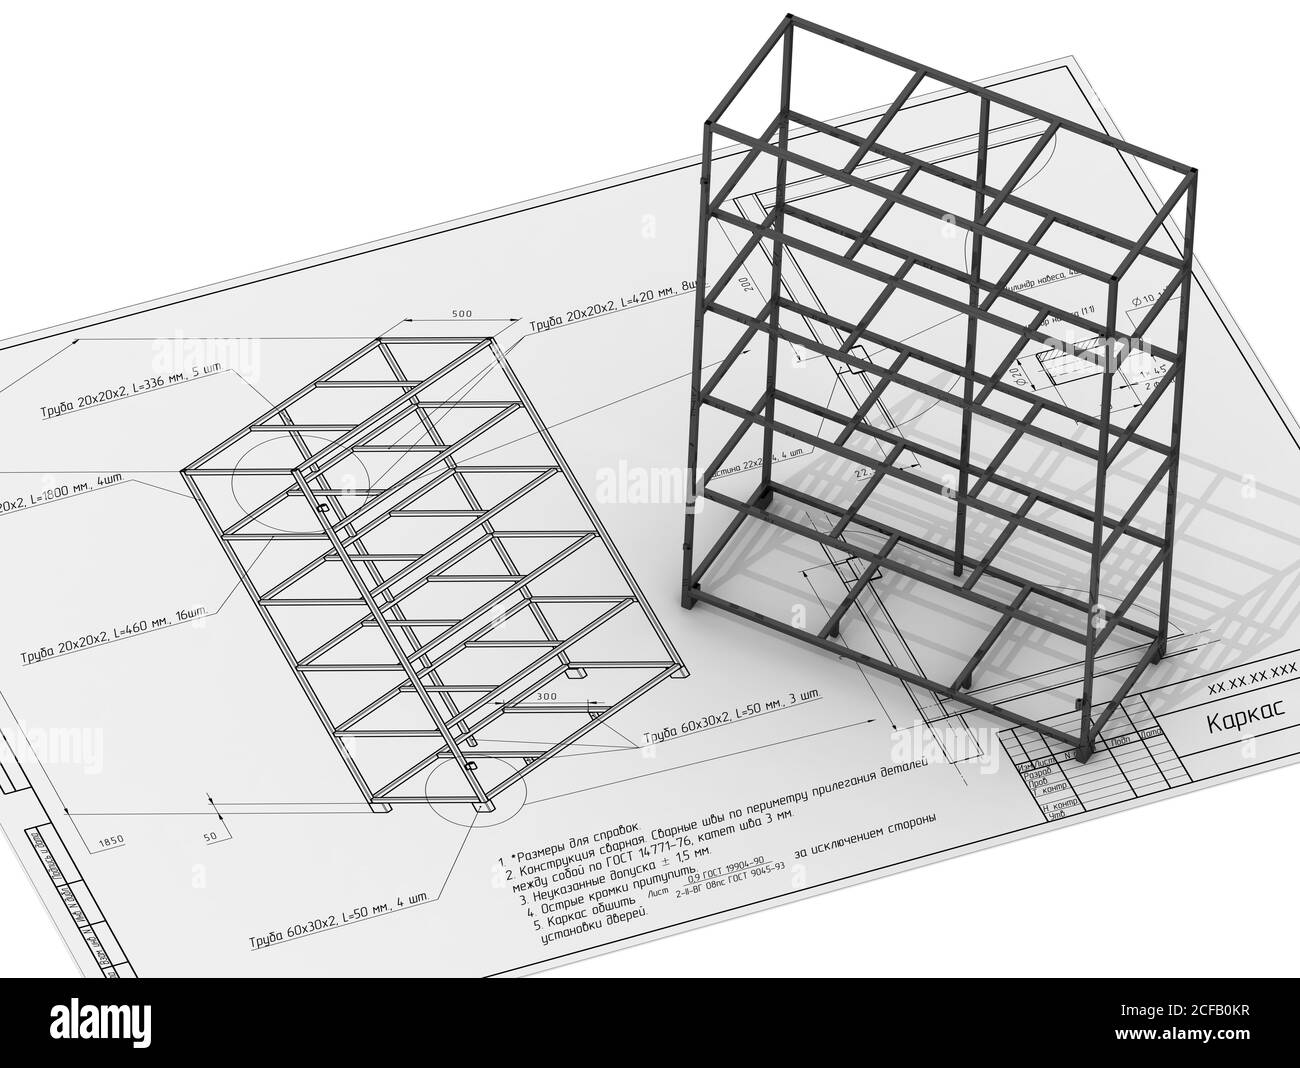 Le cadre du cabinet est sur le dessin (en russe). Illustration 3D. Isolé Banque D'Images